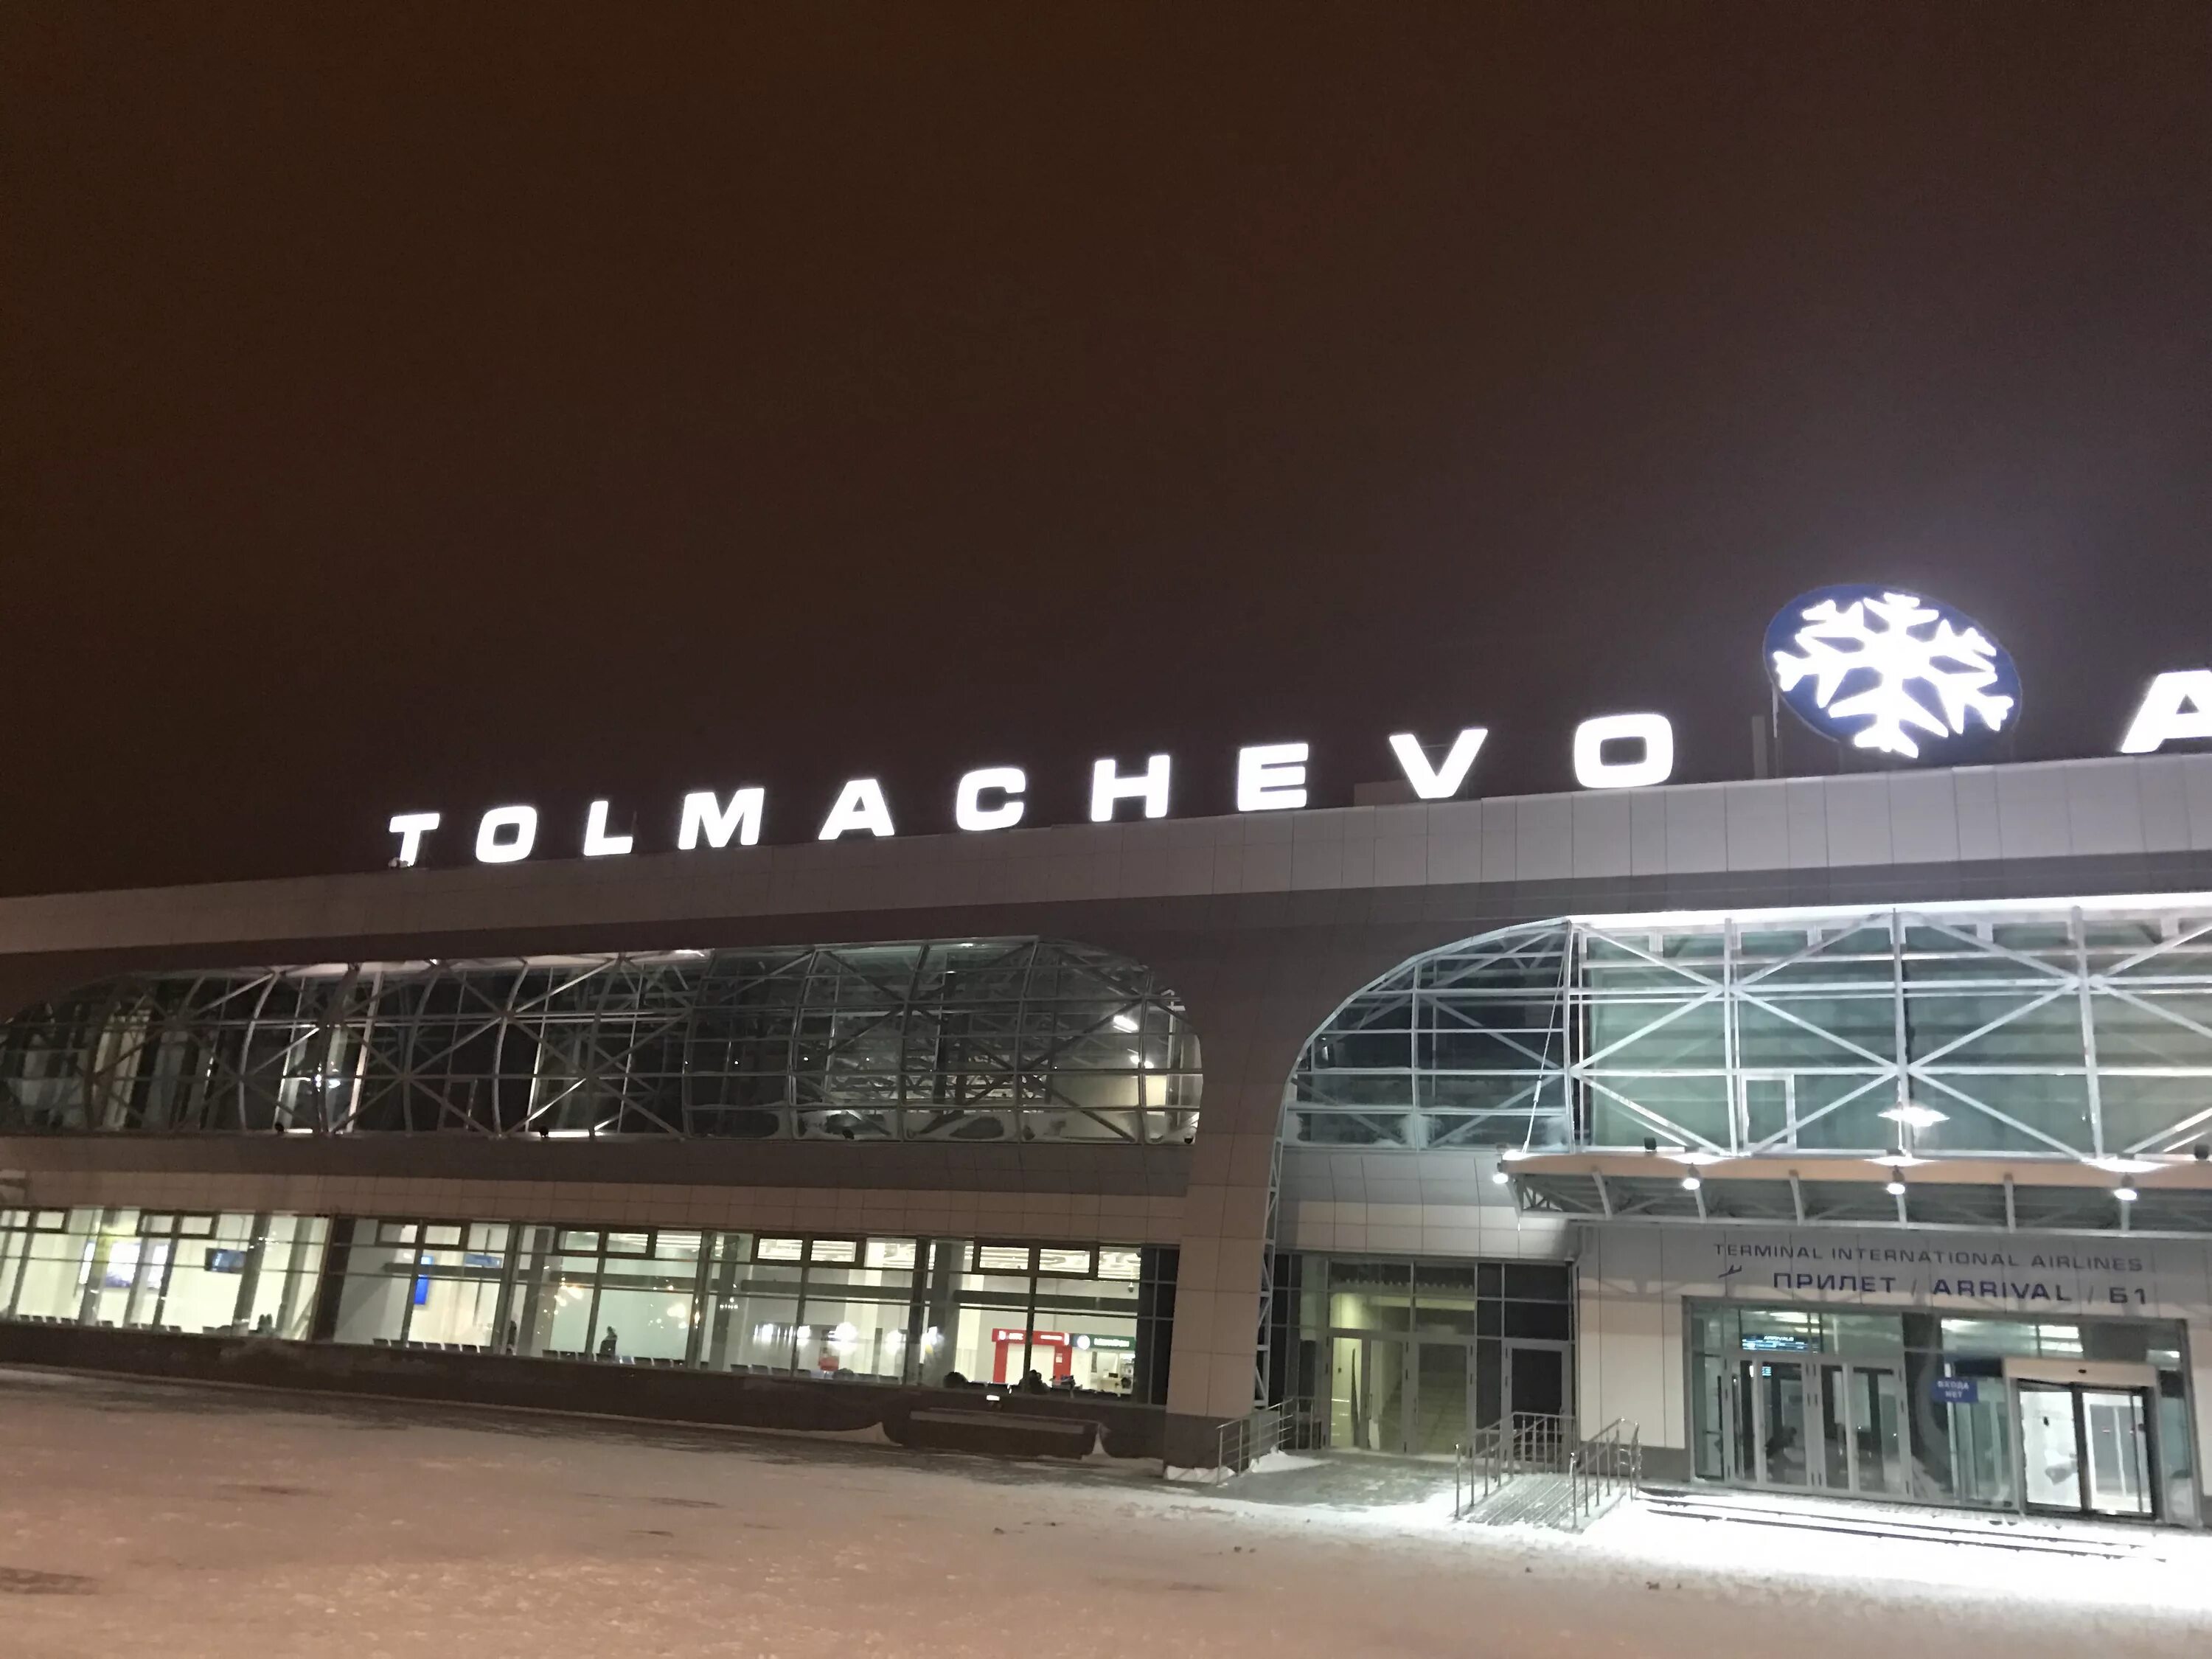 Номер аэропорта новосибирска. Аэропорт Толмачево Новосибирск зима. Аэропорт толмачёво Новосибирск зимой. Аэропорт Толмачево Новосибирск им Покрышкина. Толмачева аэропорт зима.